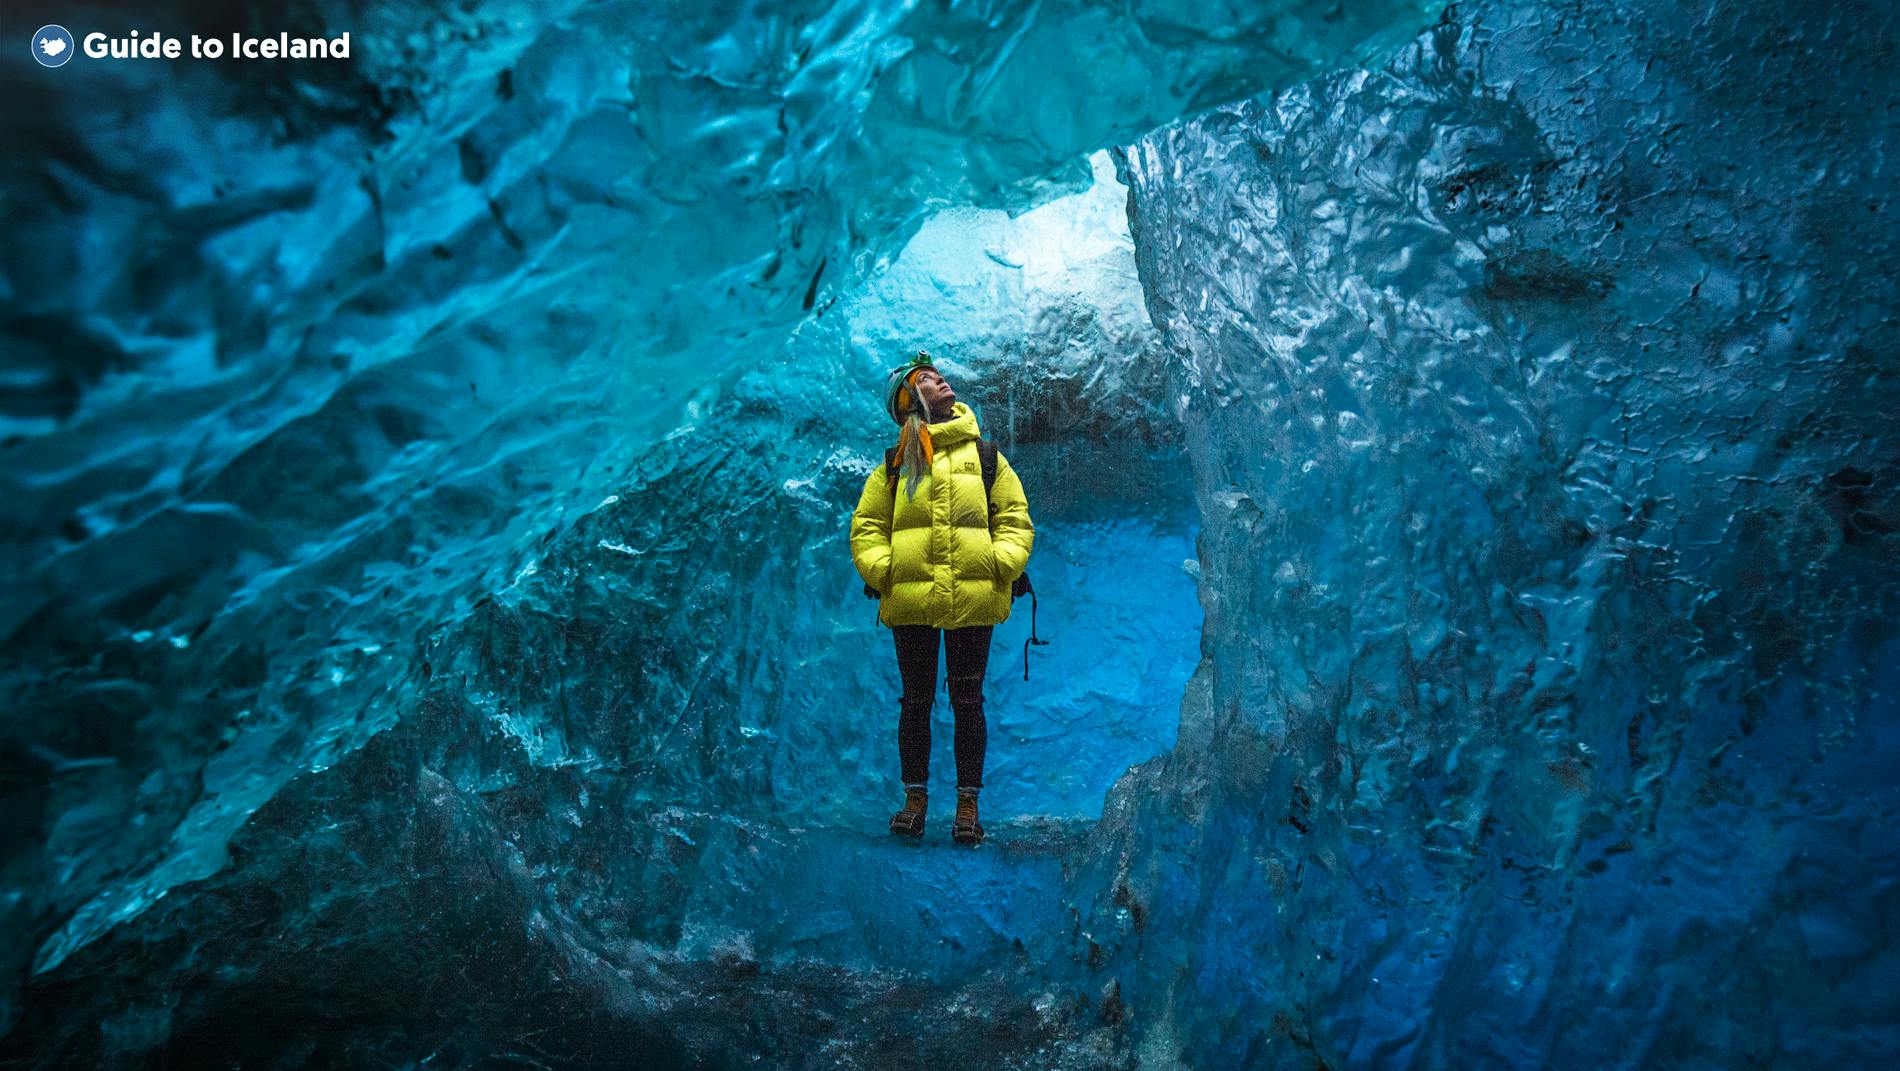 Il sole aggiunge più colori alla bellissima grotta di ghiaccio blu nel Parco Nazionale di Vatnajökull.